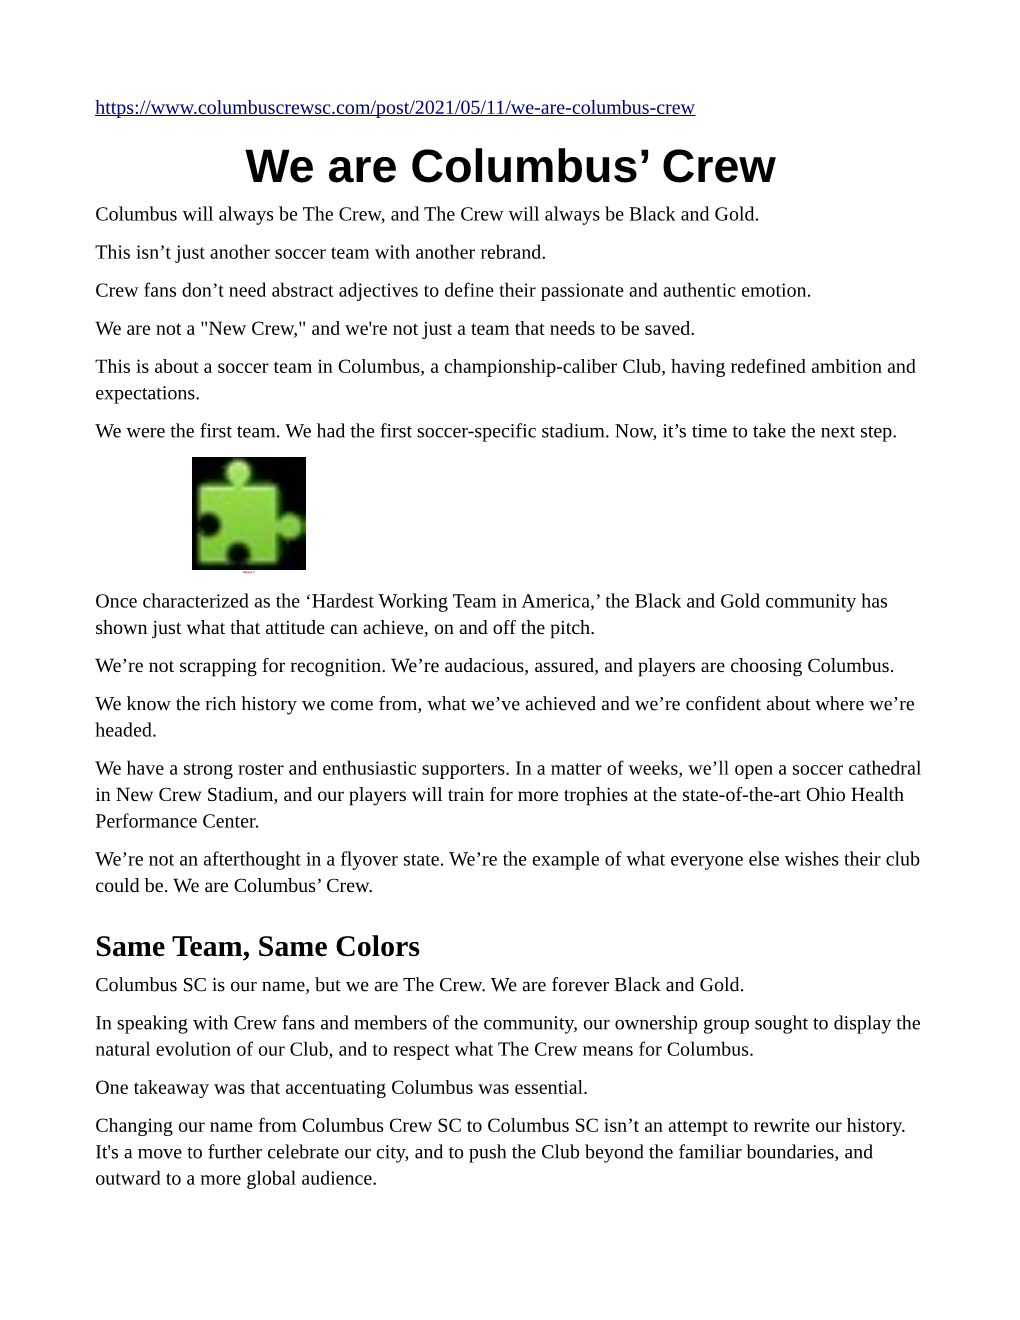 We Are Columbus' Crew